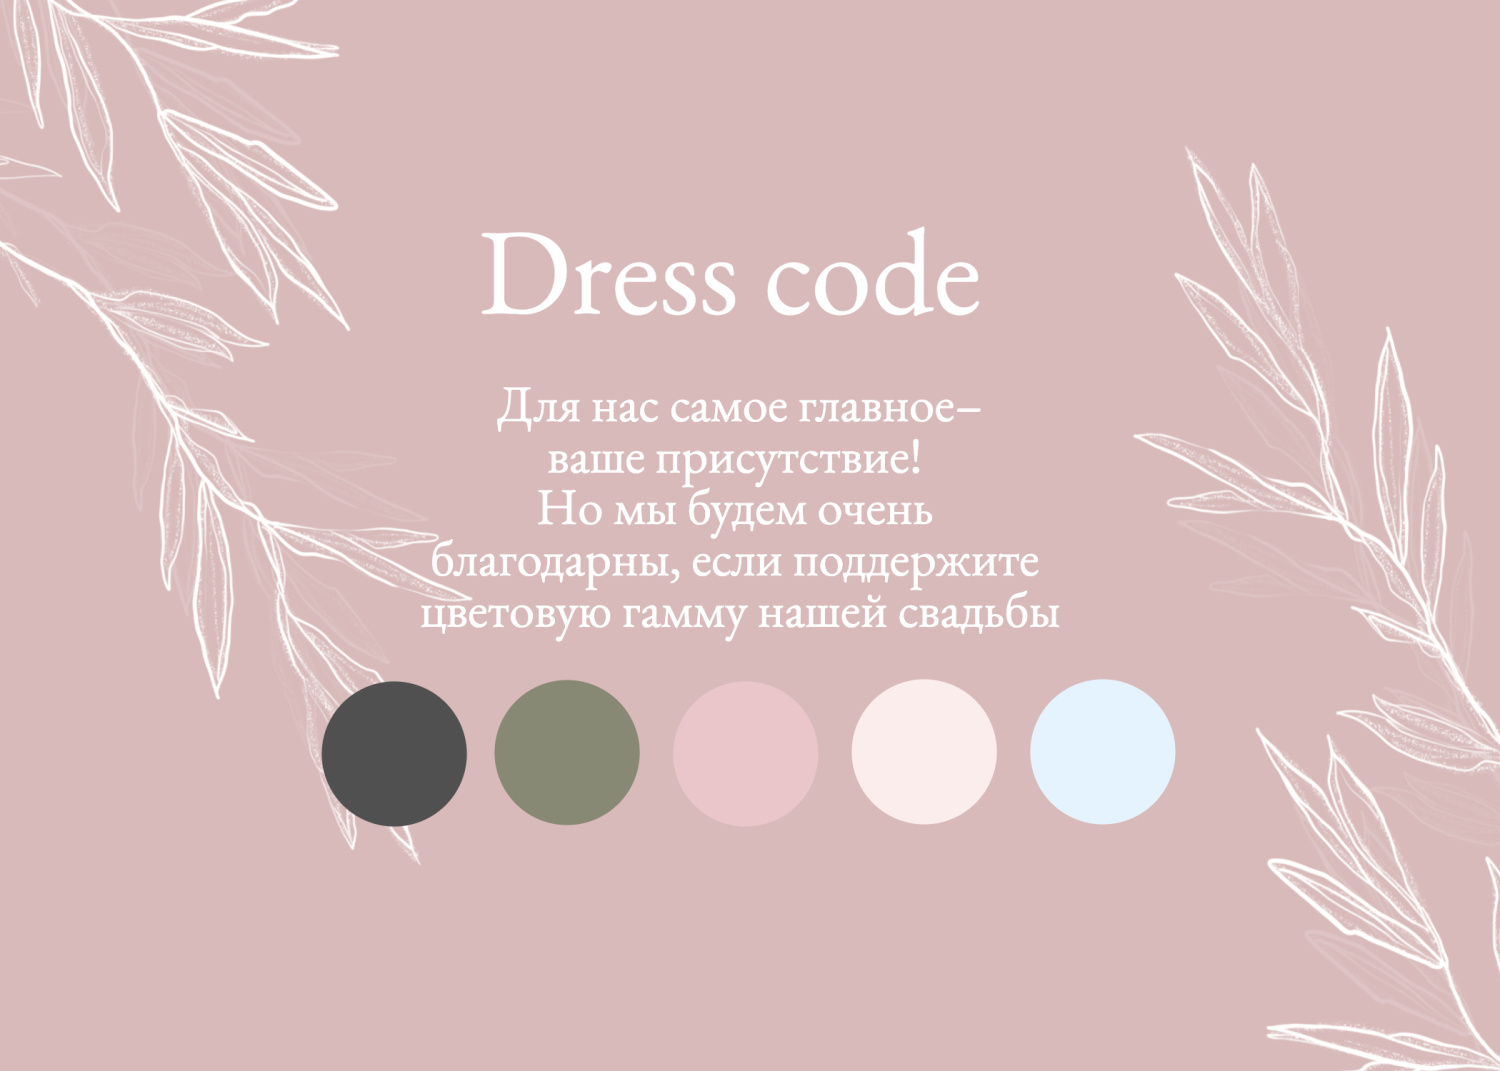 Дресс-код в стиле рустик розовый